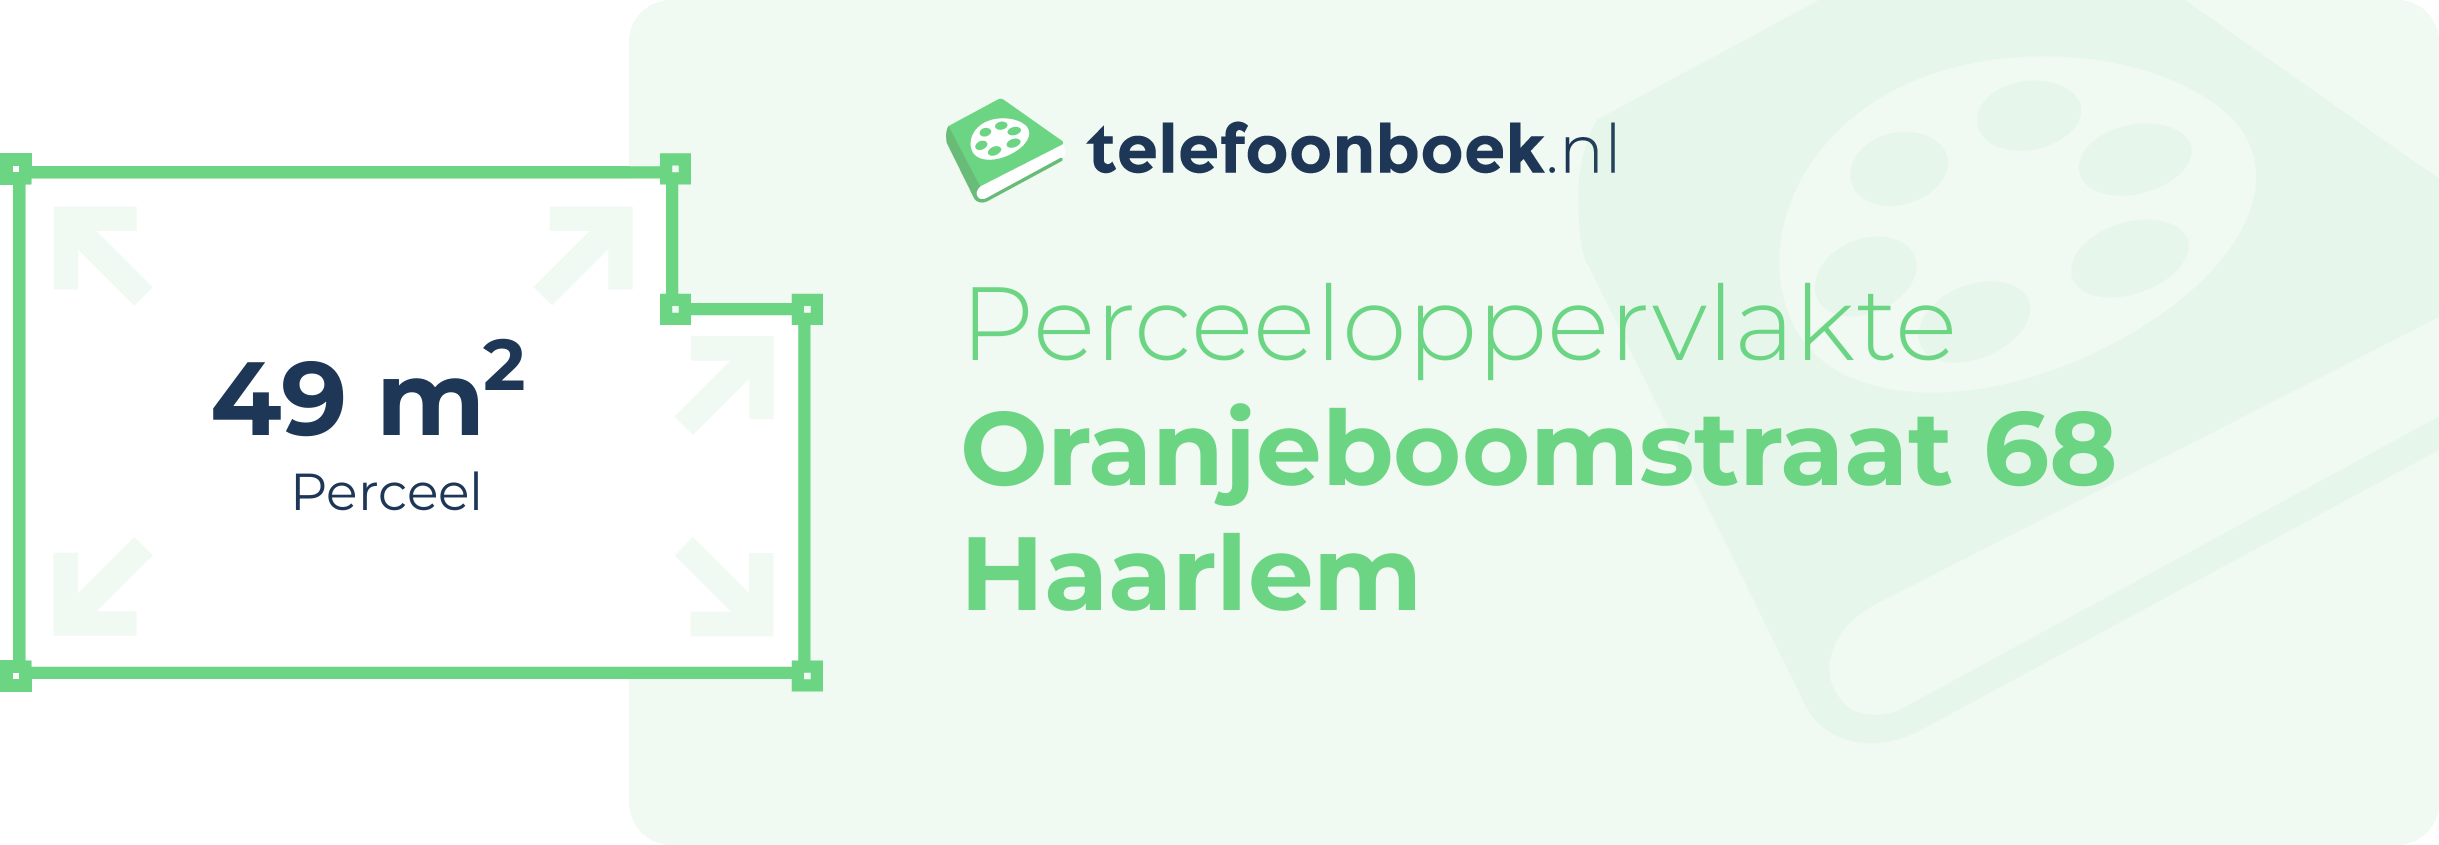 Perceeloppervlakte Oranjeboomstraat 68 Haarlem